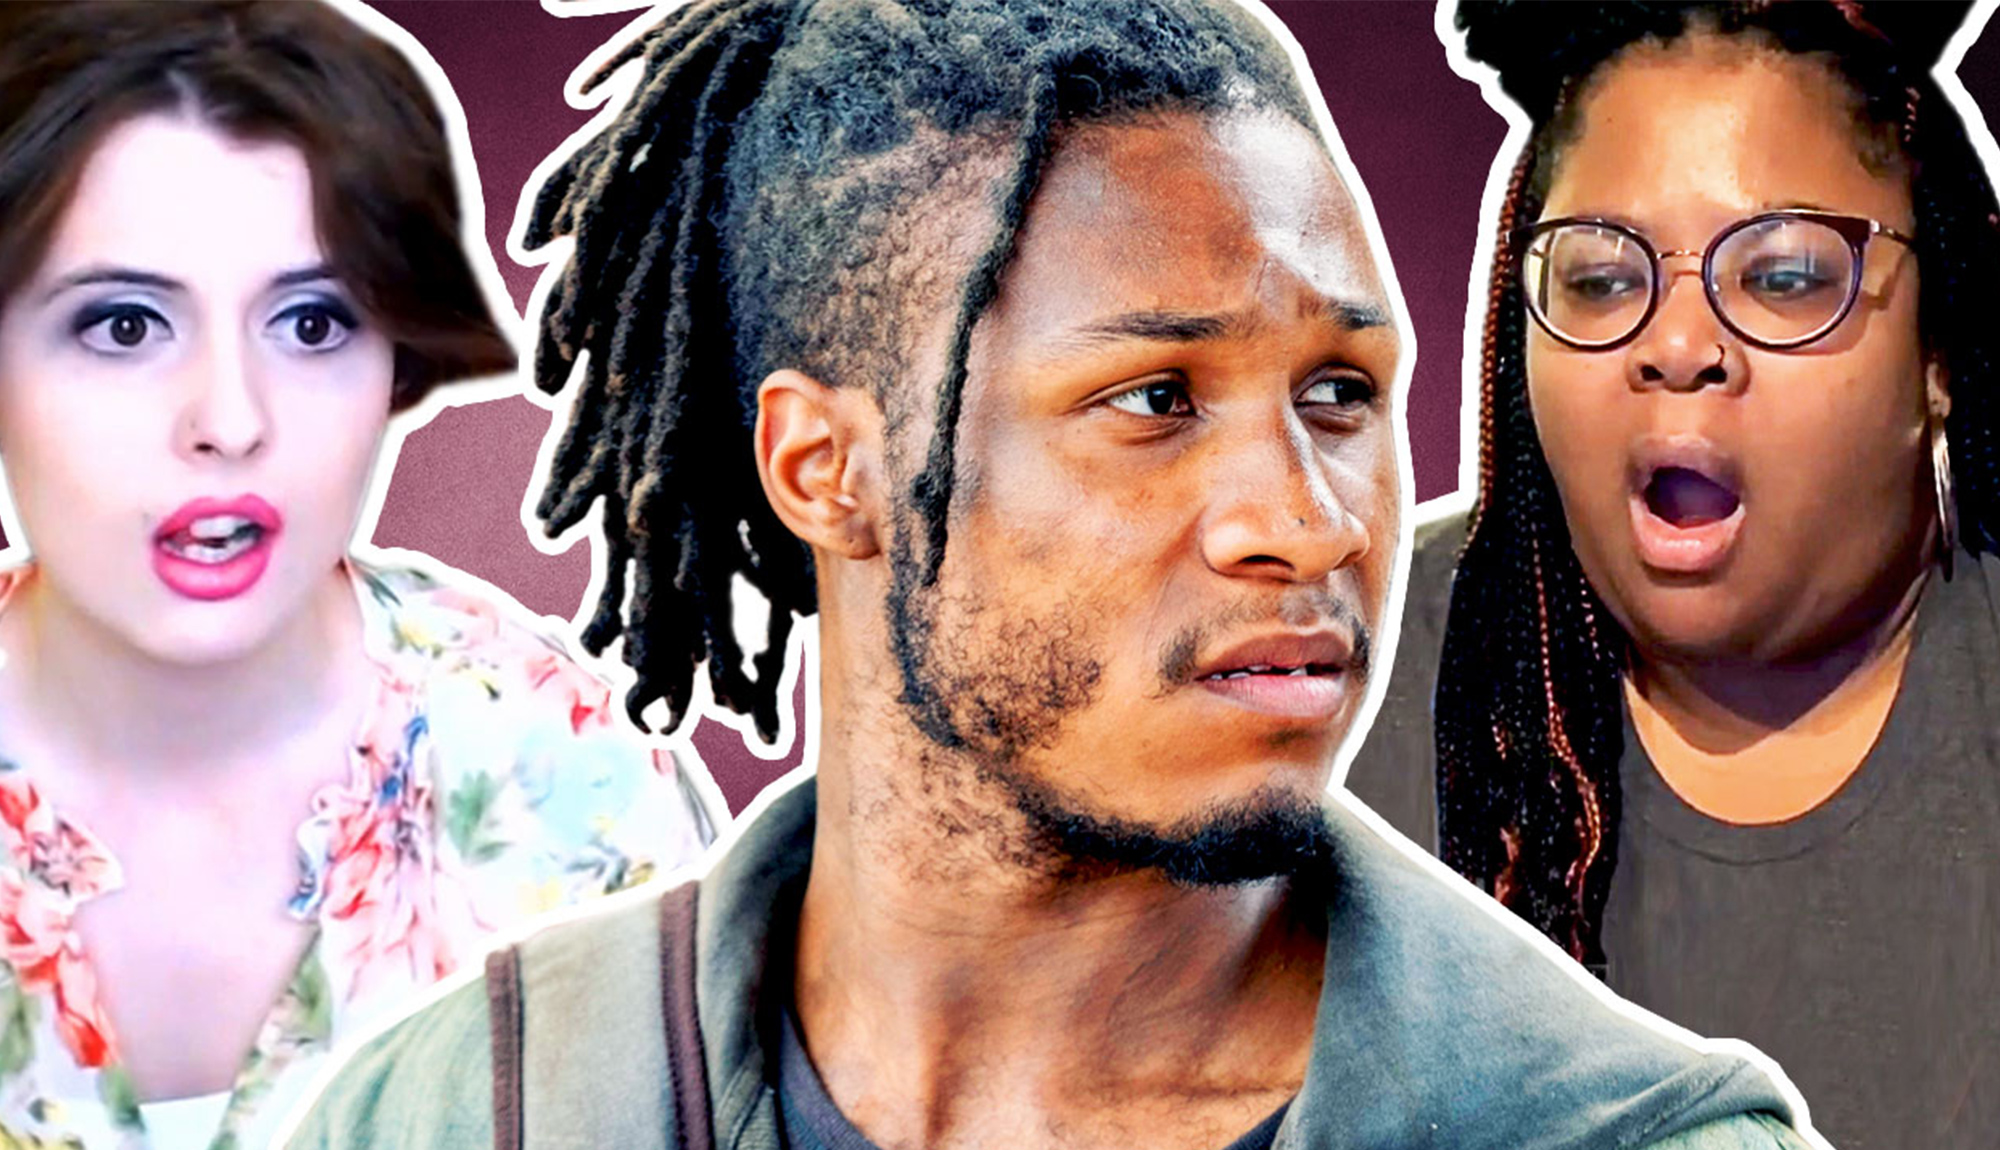 Fans React to Fear the Walking Dead Season 5 Episode 11: “You’re Still Here”